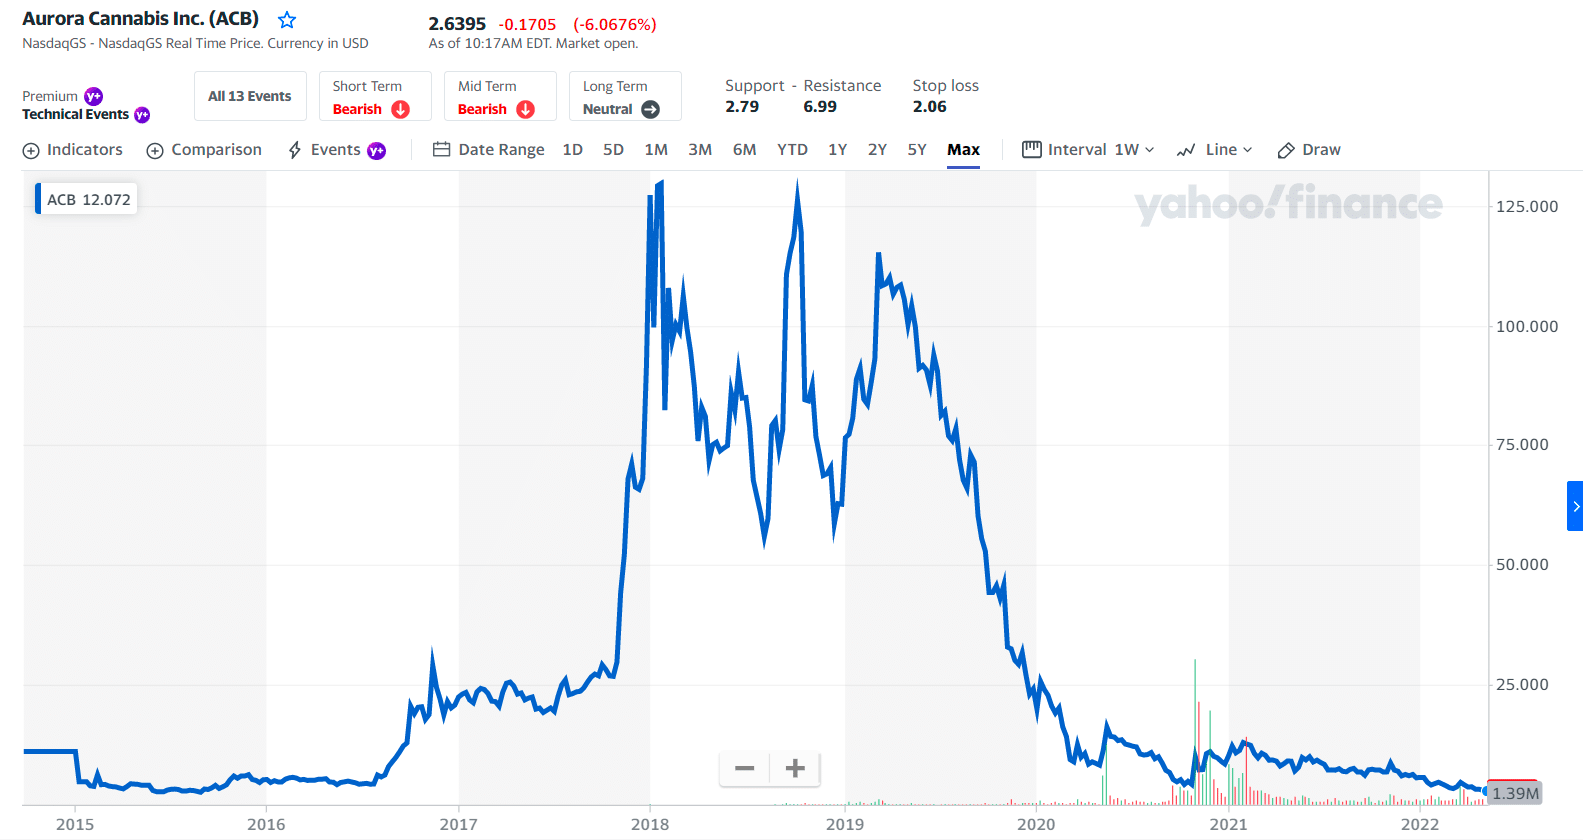 ACB price chart